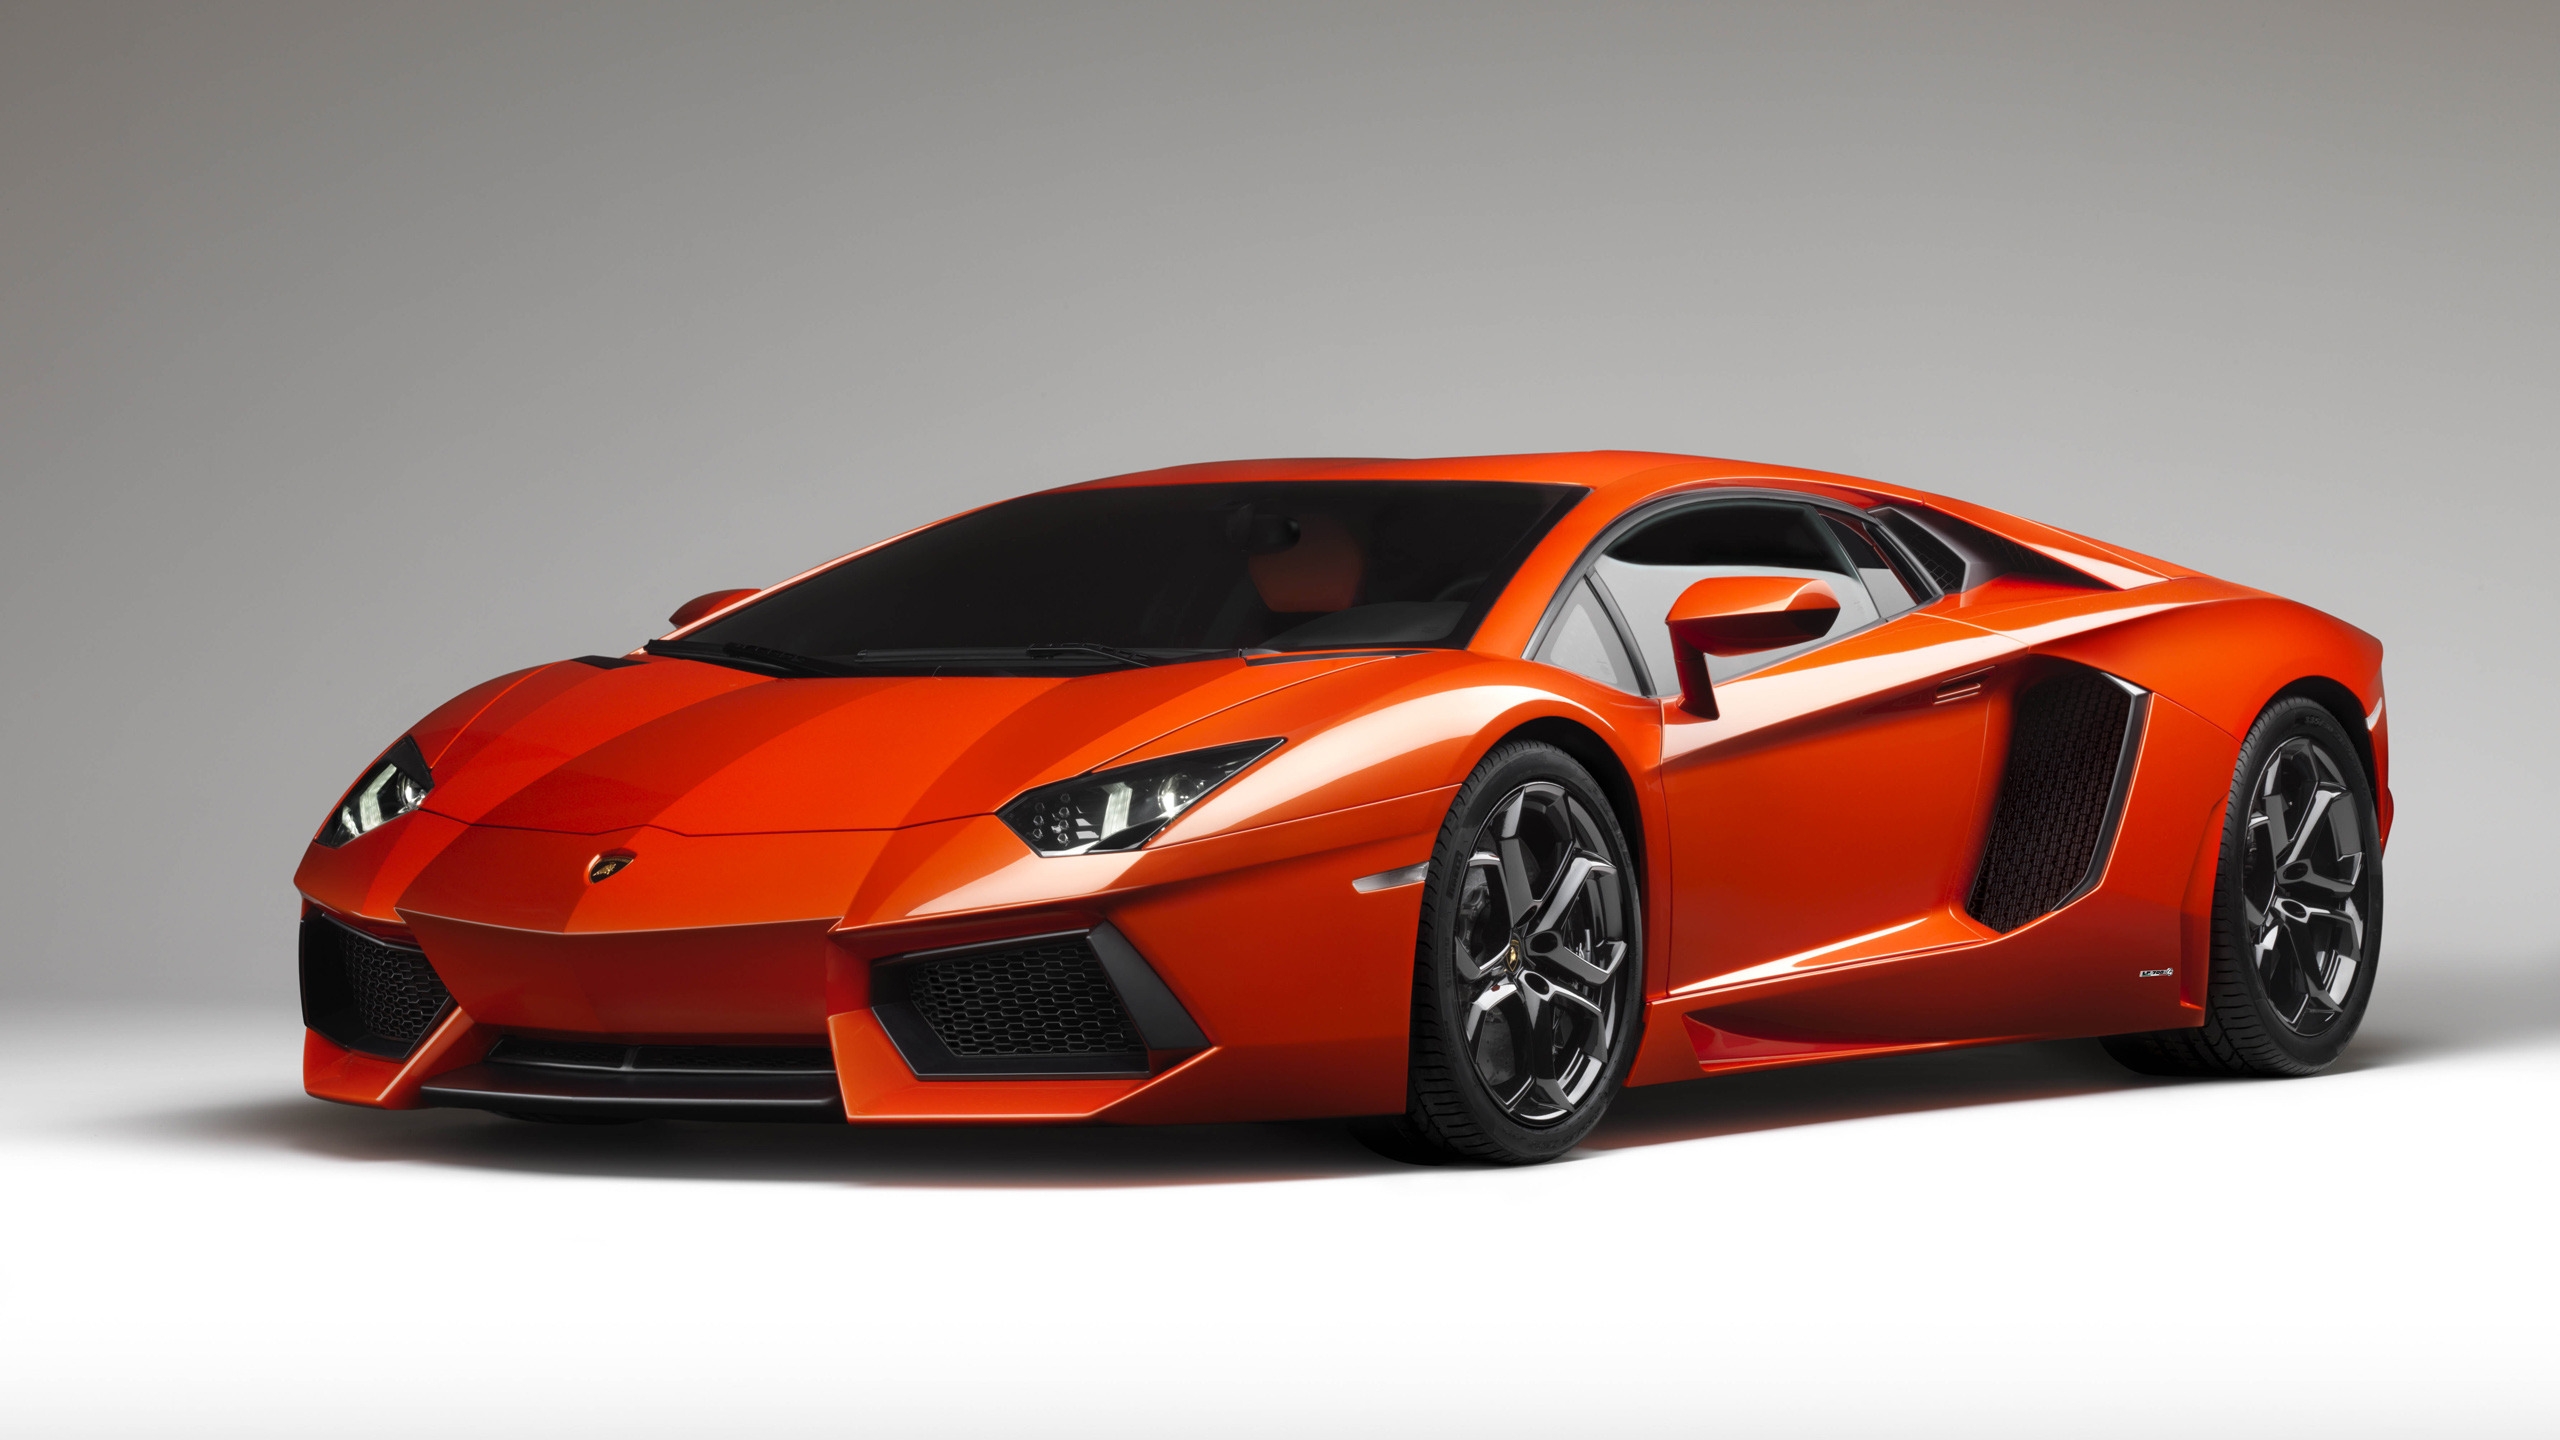 Lamborghini Aventador for 2560x1440 HDTV resolution